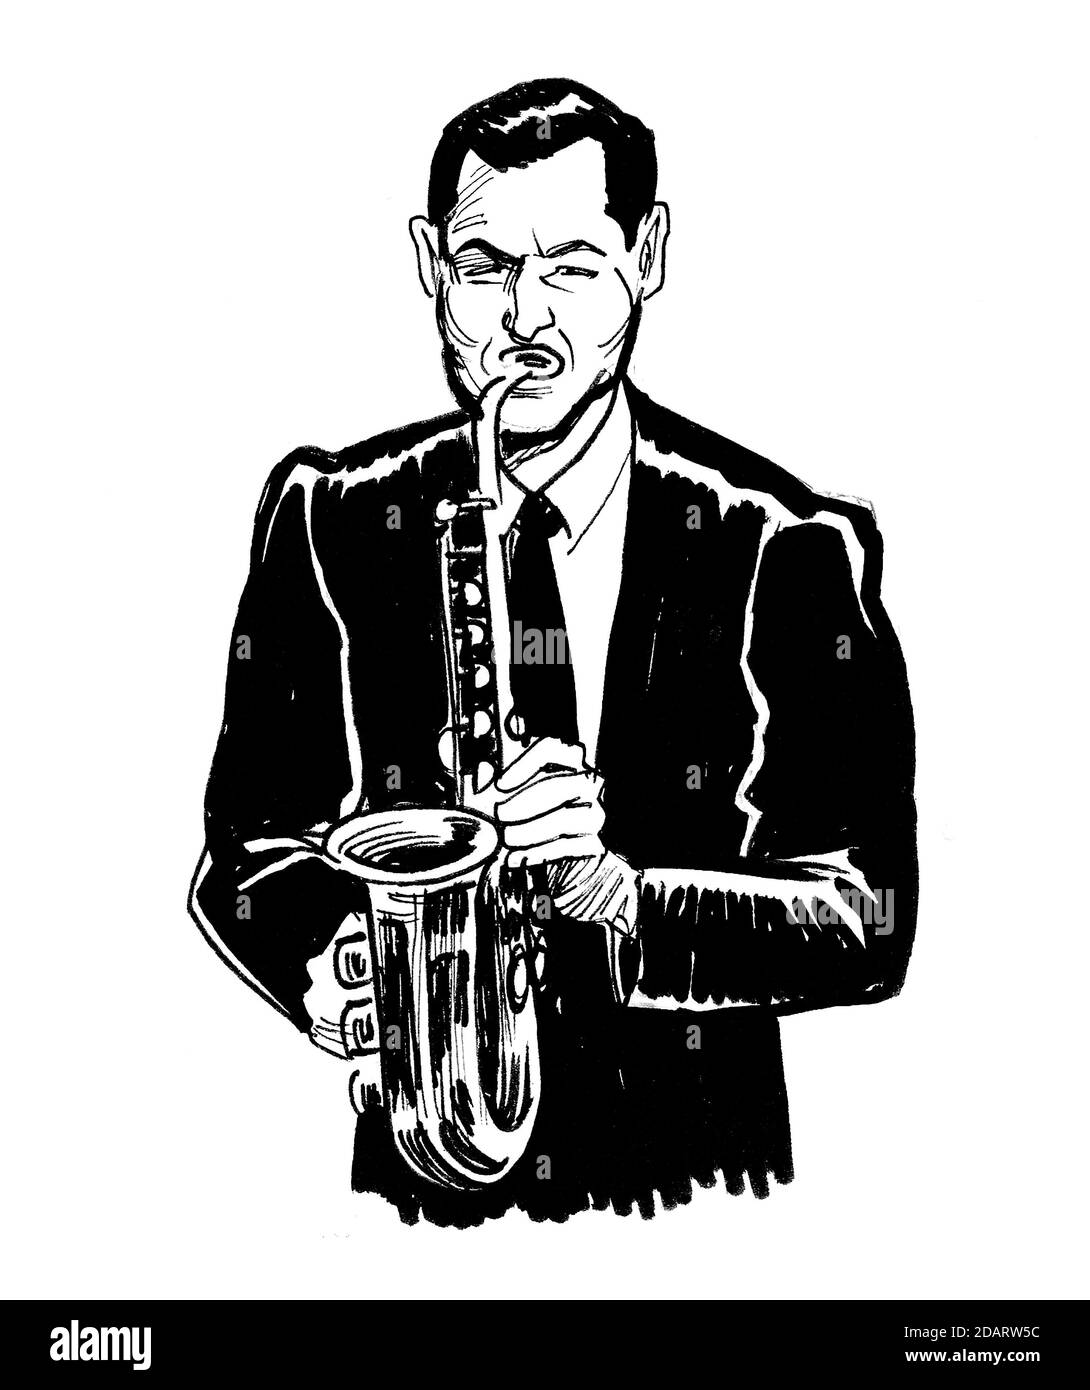 Homme jouant au saxophone. Dessin noir et blanc Banque D'Images